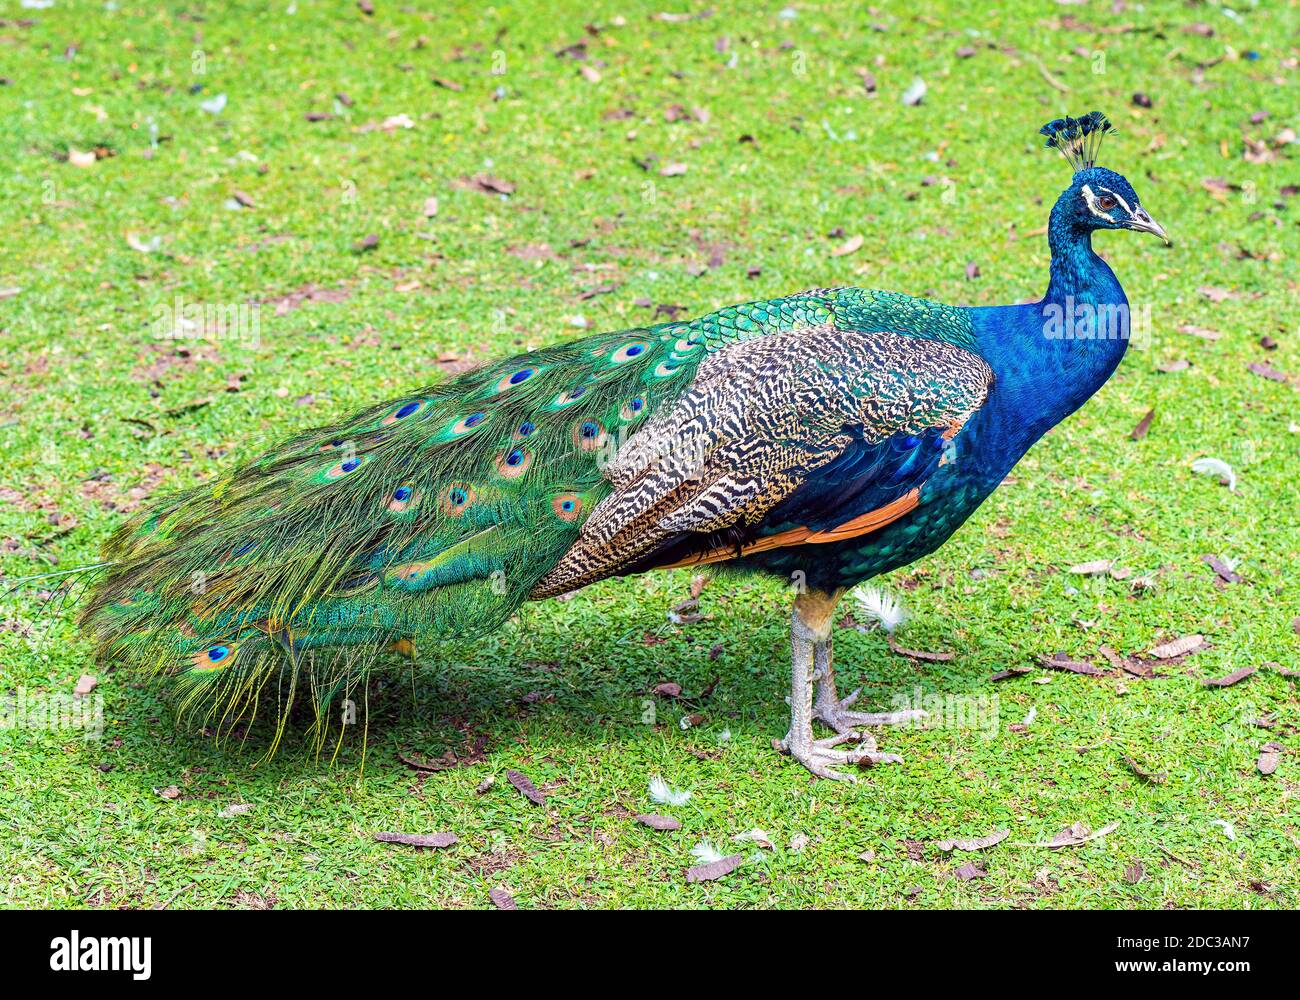 Ritratto di un Peafowl o Peacock indiano maschio (Pavo cristatus) nell'erba. Foto Stock